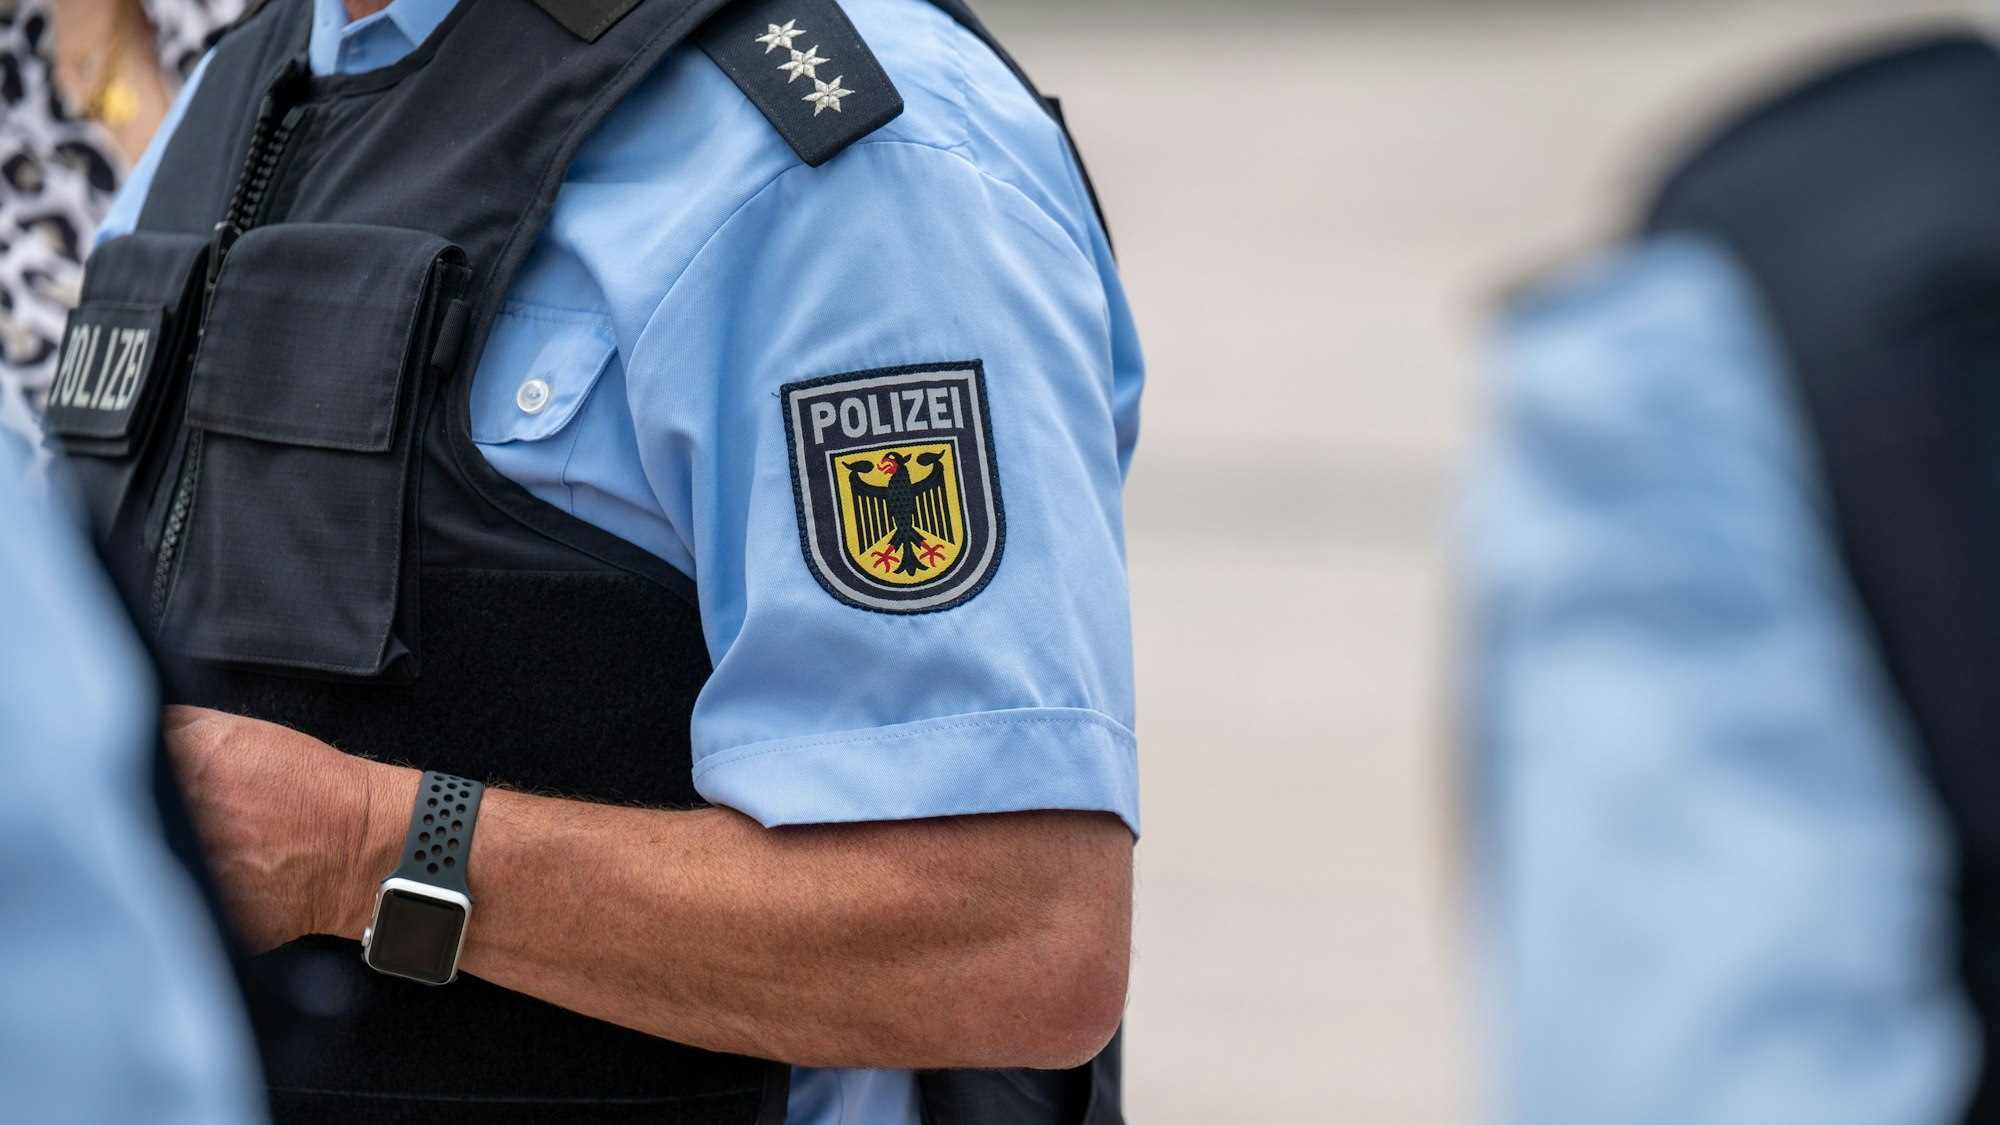 Das Emblem der Bundespolizei ist auf der Uniform eines Bundesbeamten zu sehen.